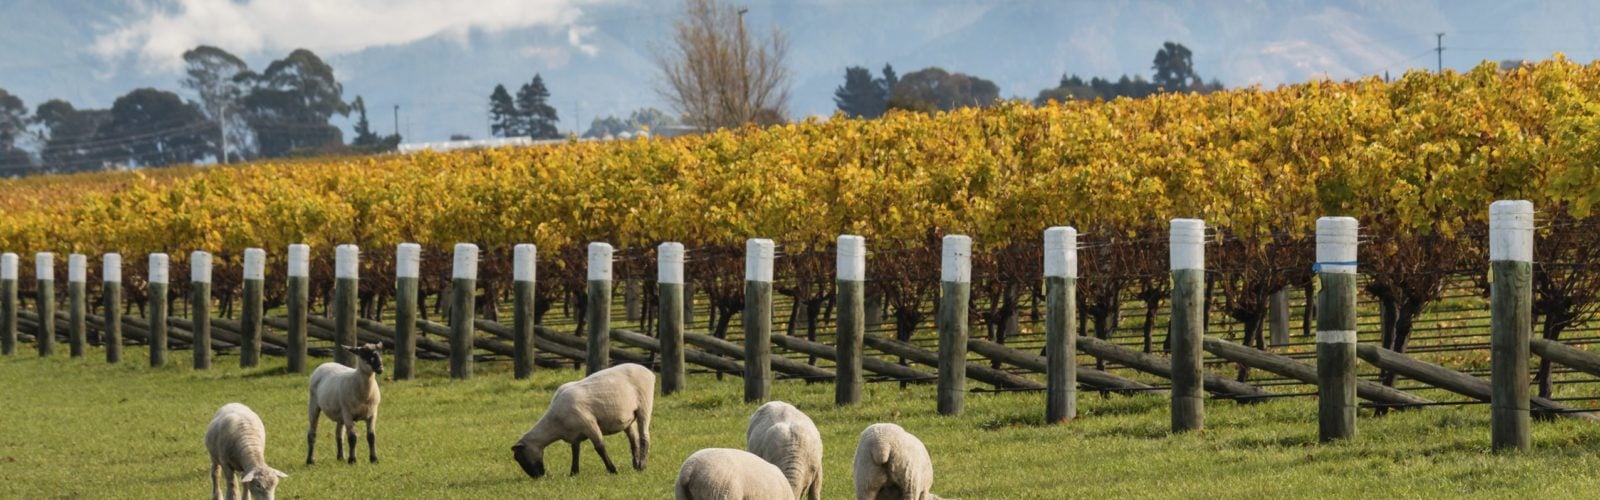 vineyard-and-sheep